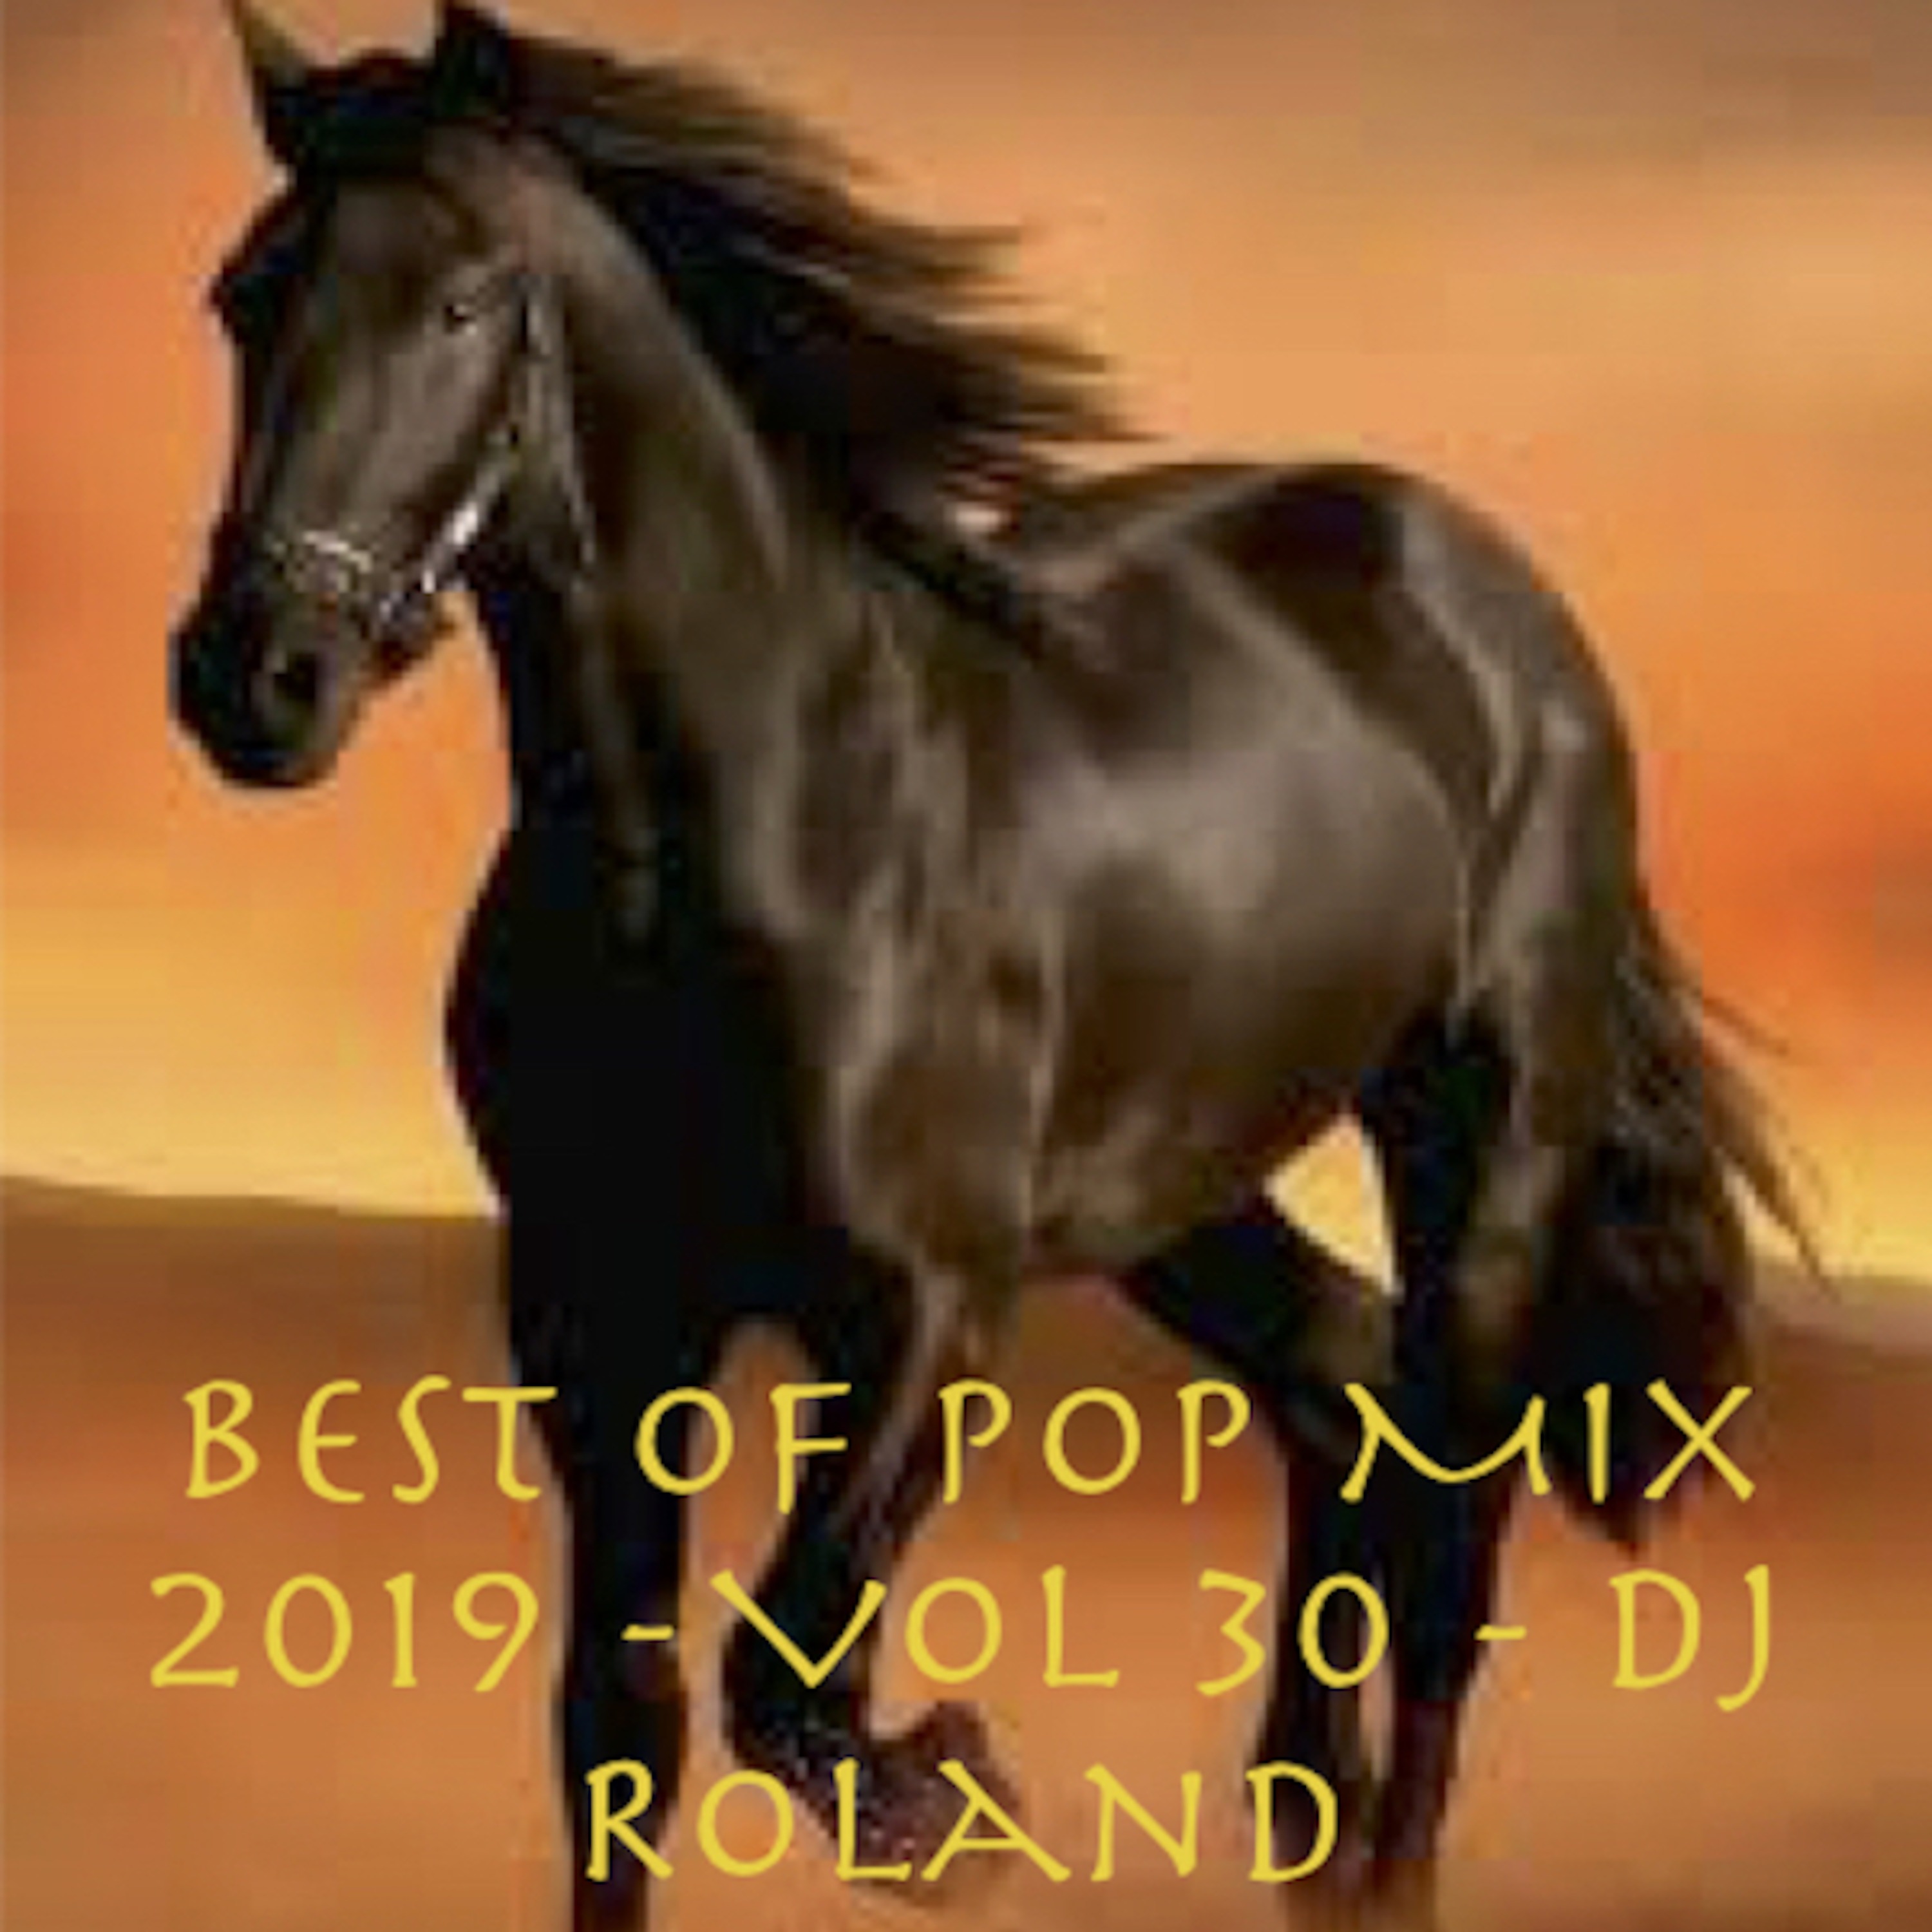 Best Of Pop Mix 2019 Vol 30 Dj Roland Dj Roland Podcast